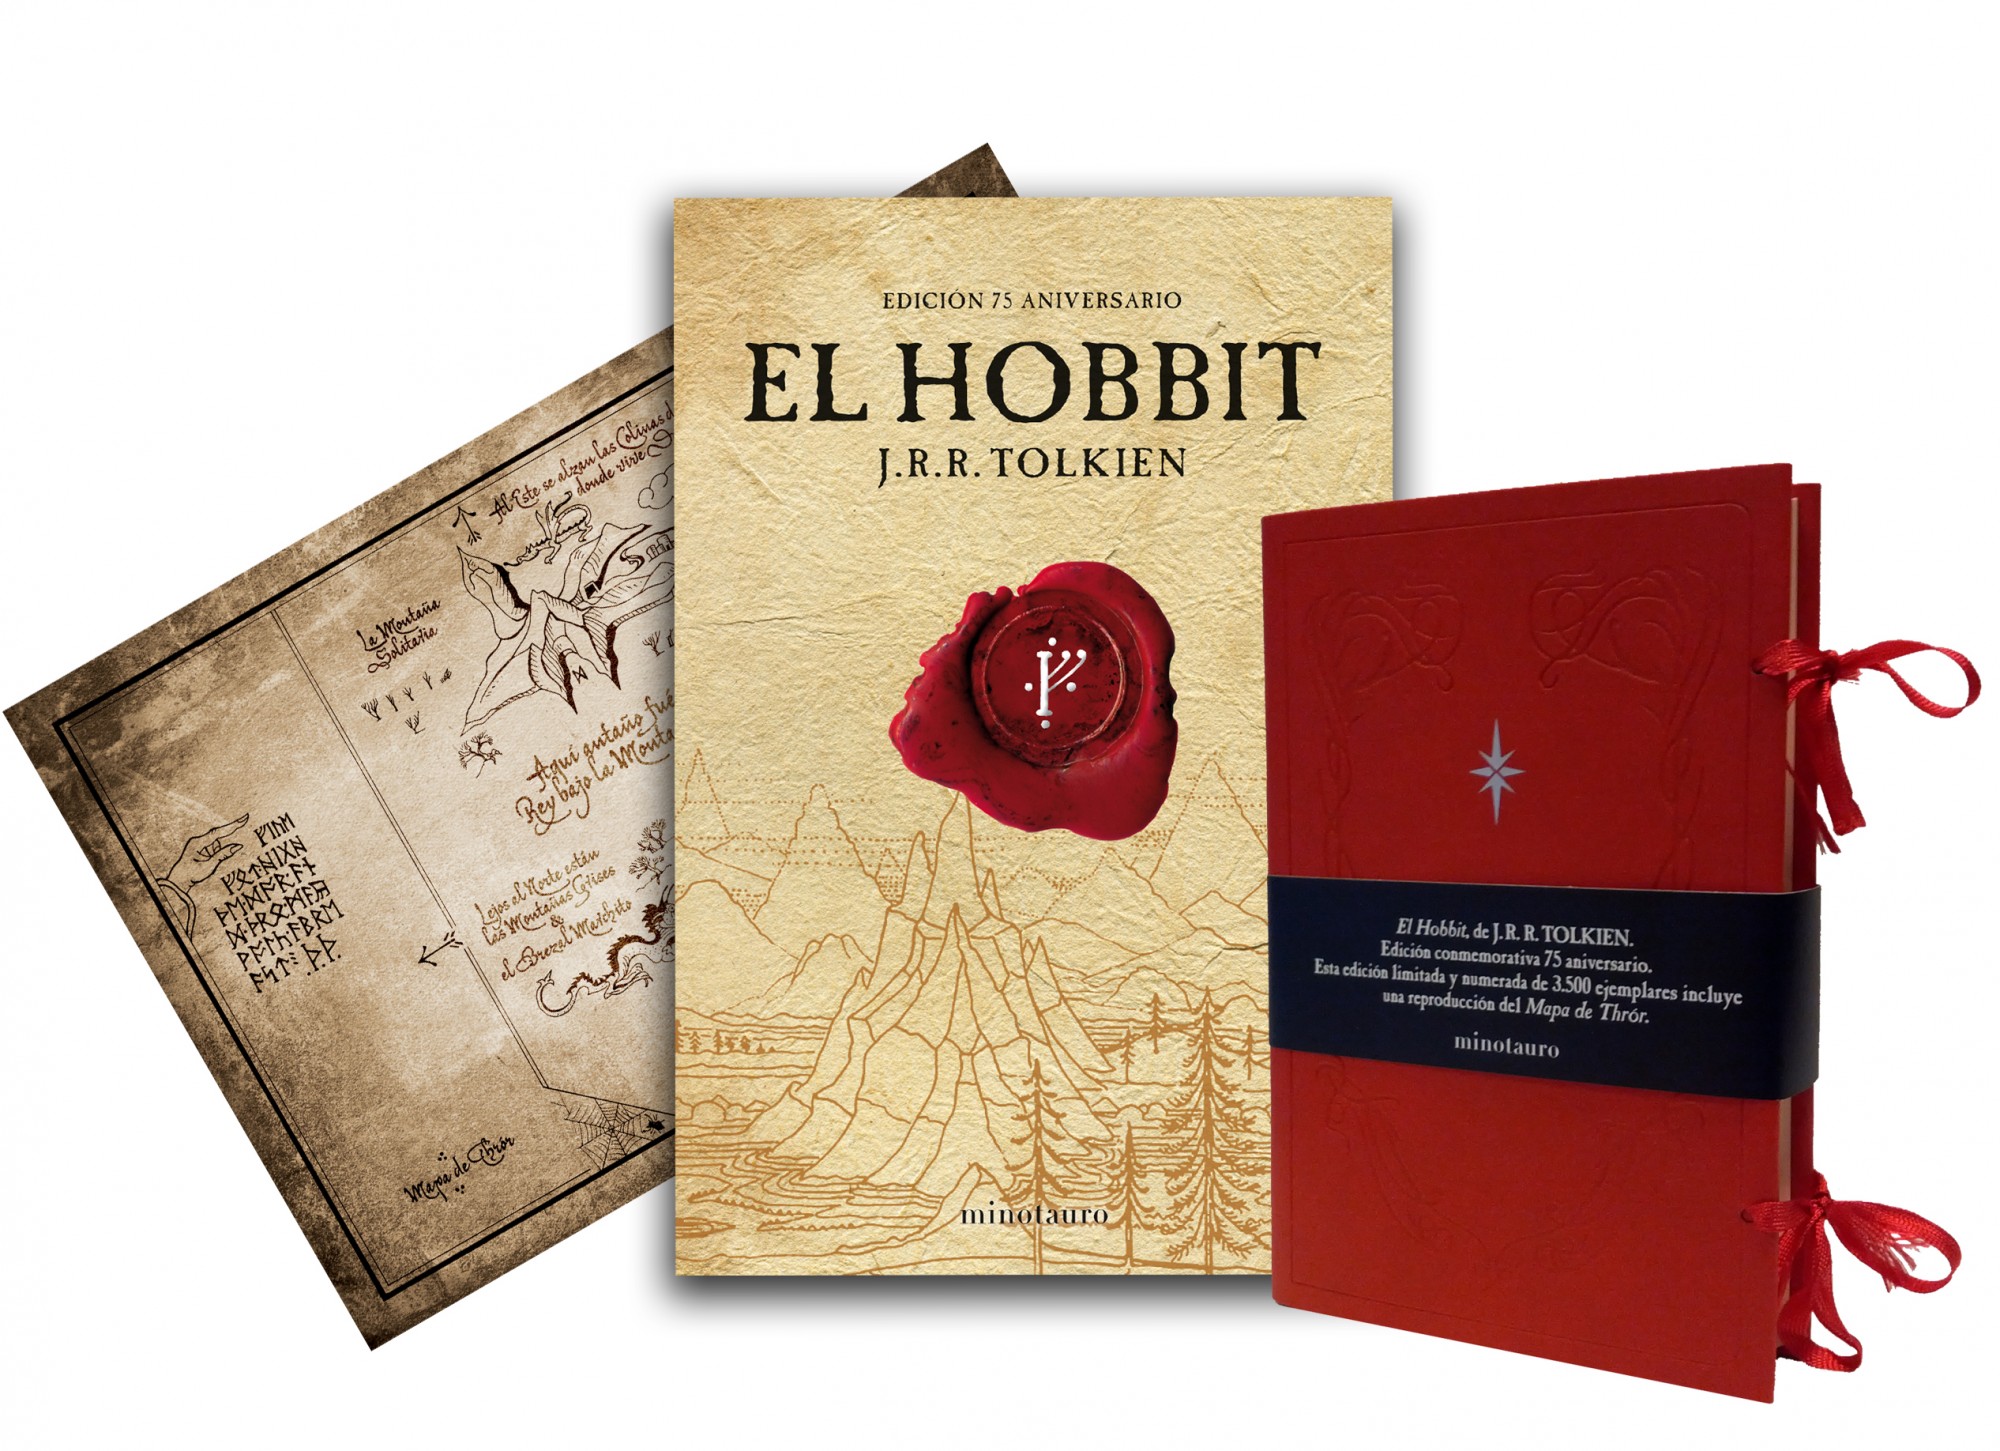 Subastan edición original de “Hobbit” por 137.000 libras en Londres